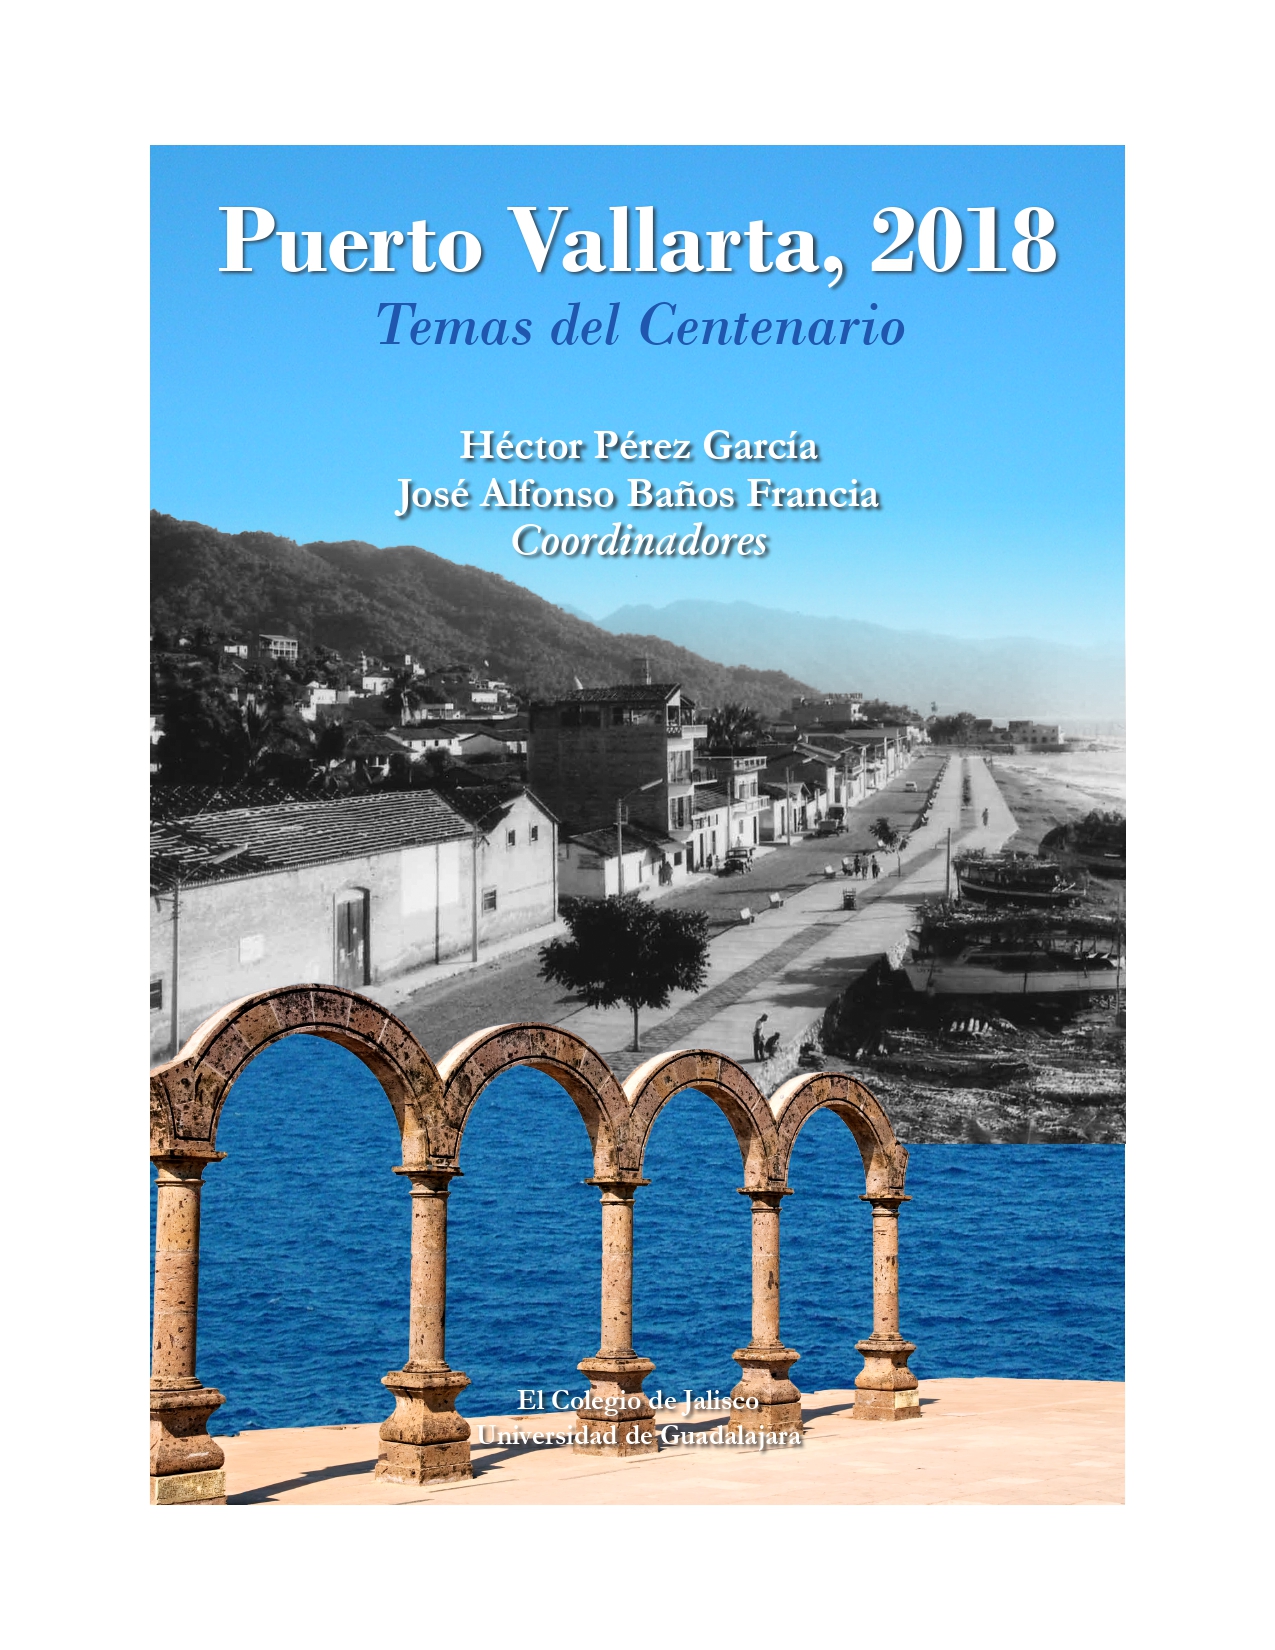 Puerto Vallarta, 2018, Temas del Centenario<br />
        